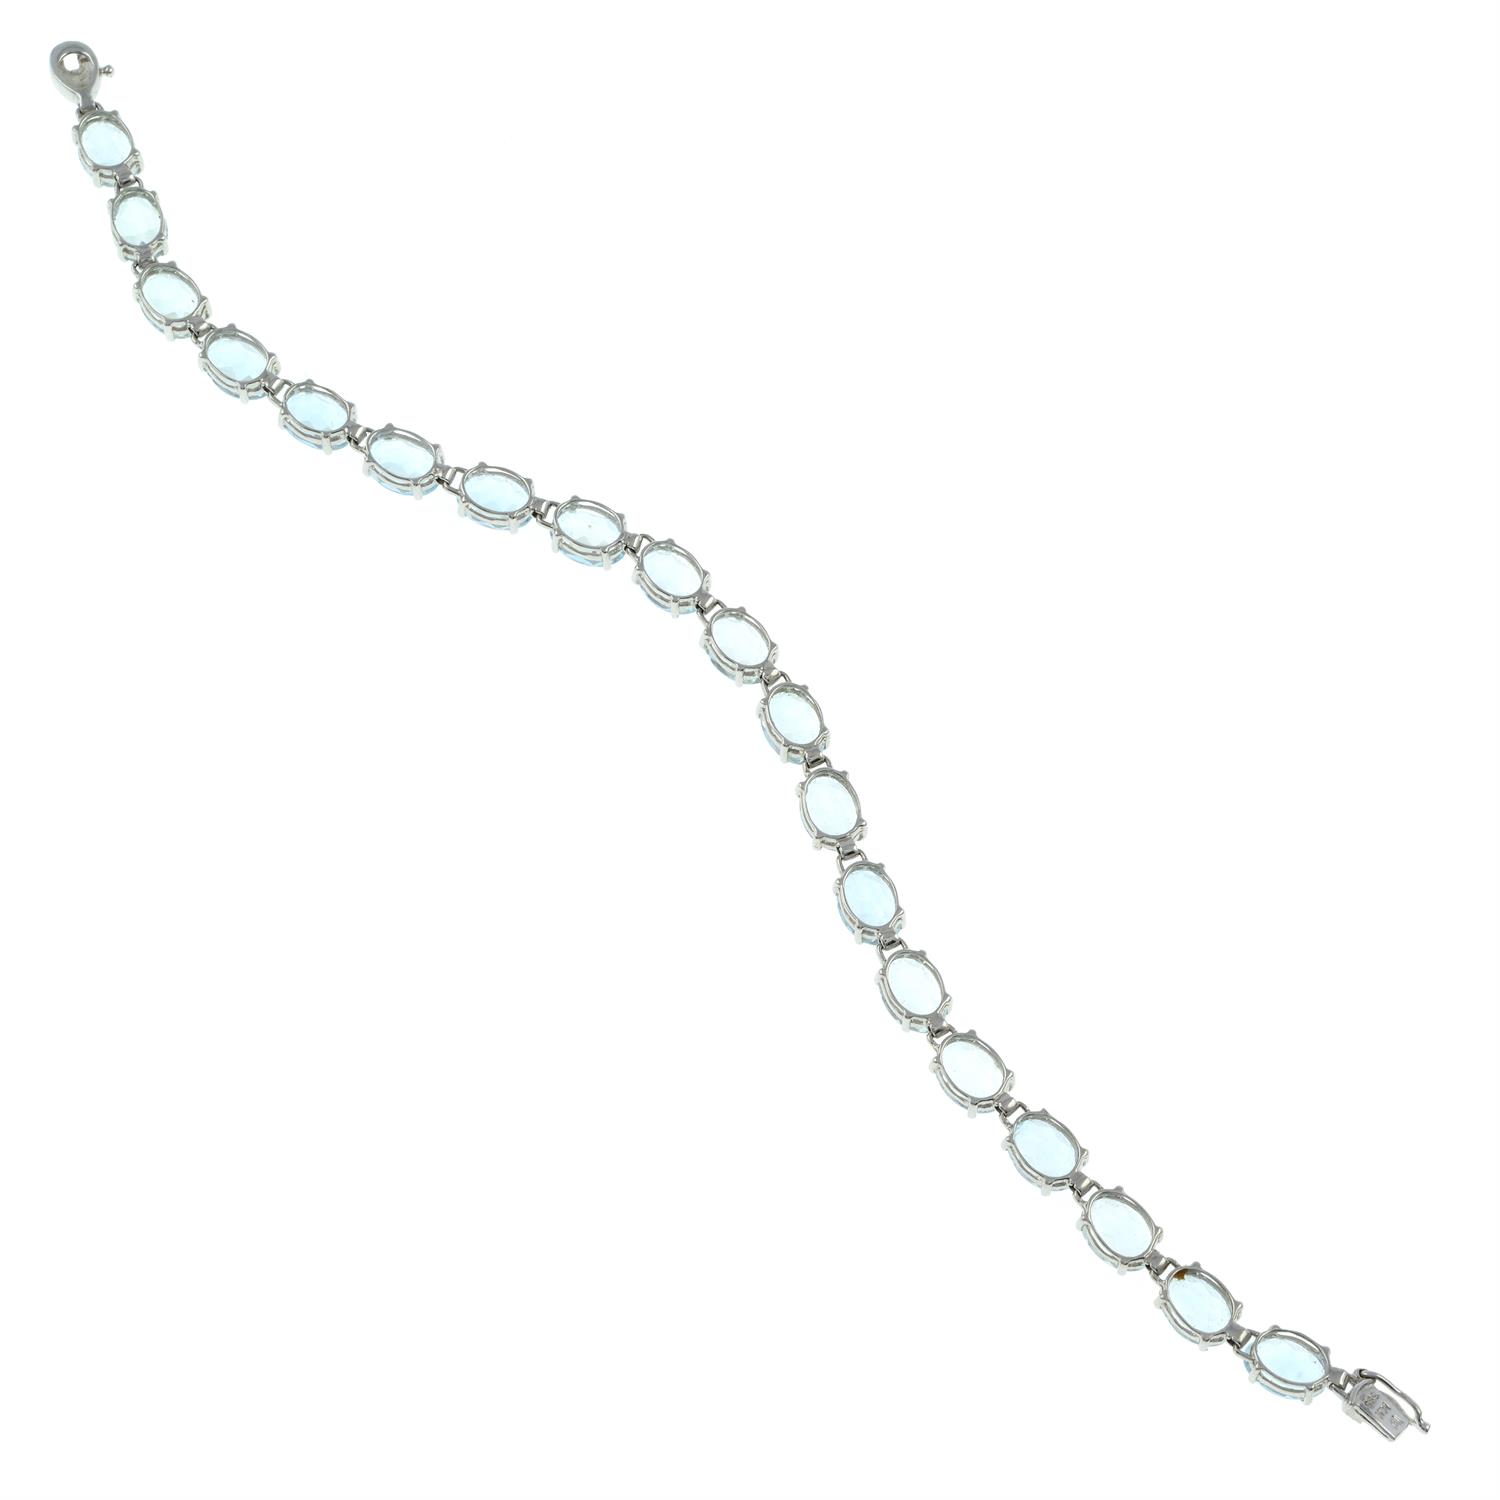 Aquamarine bracelet - Image 2 of 2